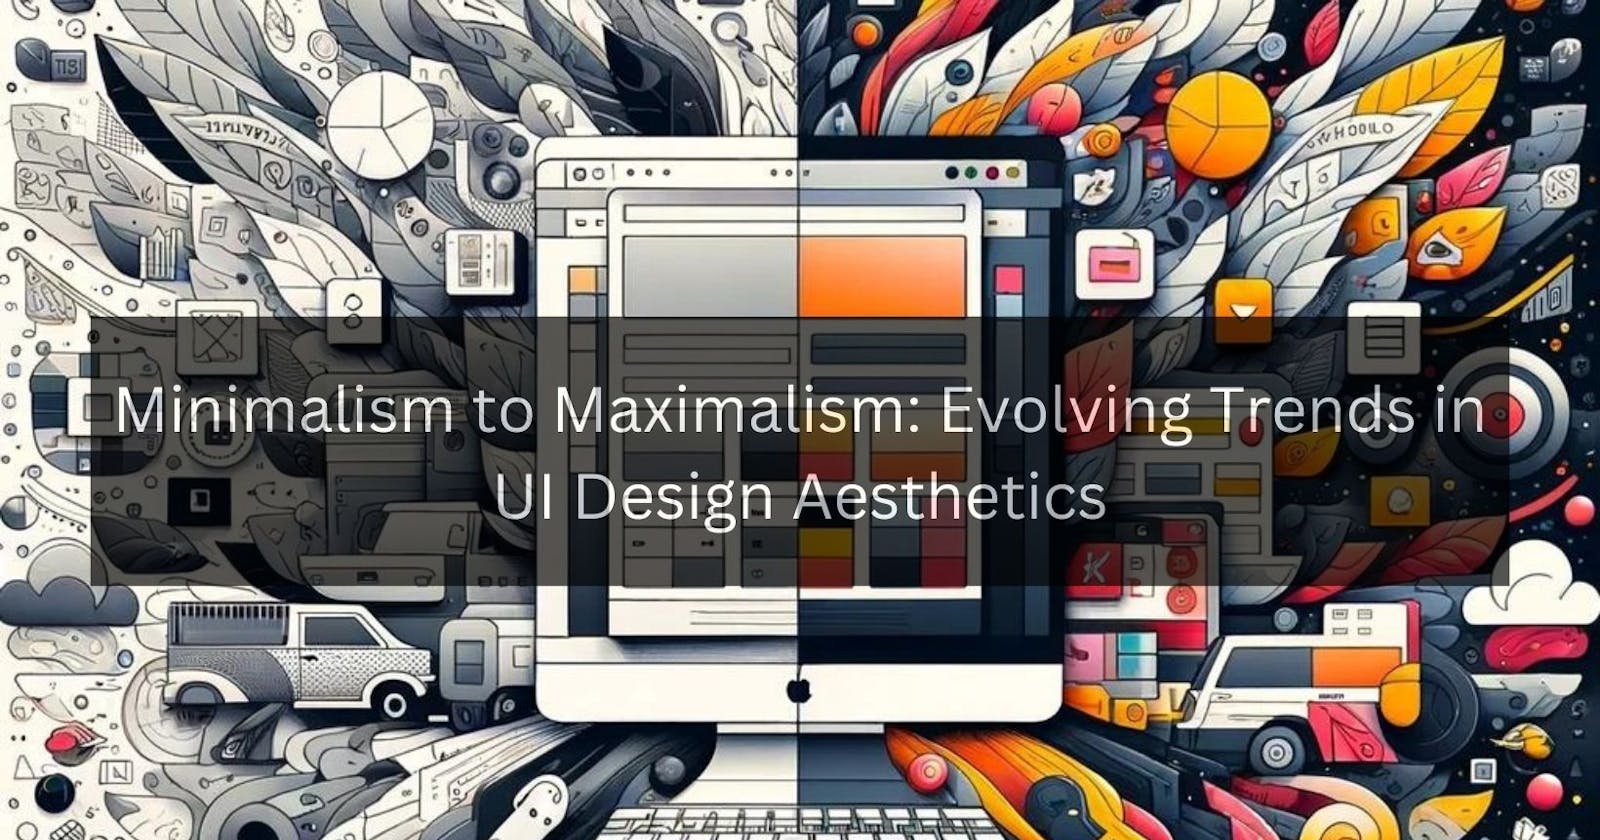 Minimalism to Maximalism: Evolving Trends in UI Design Aesthetics